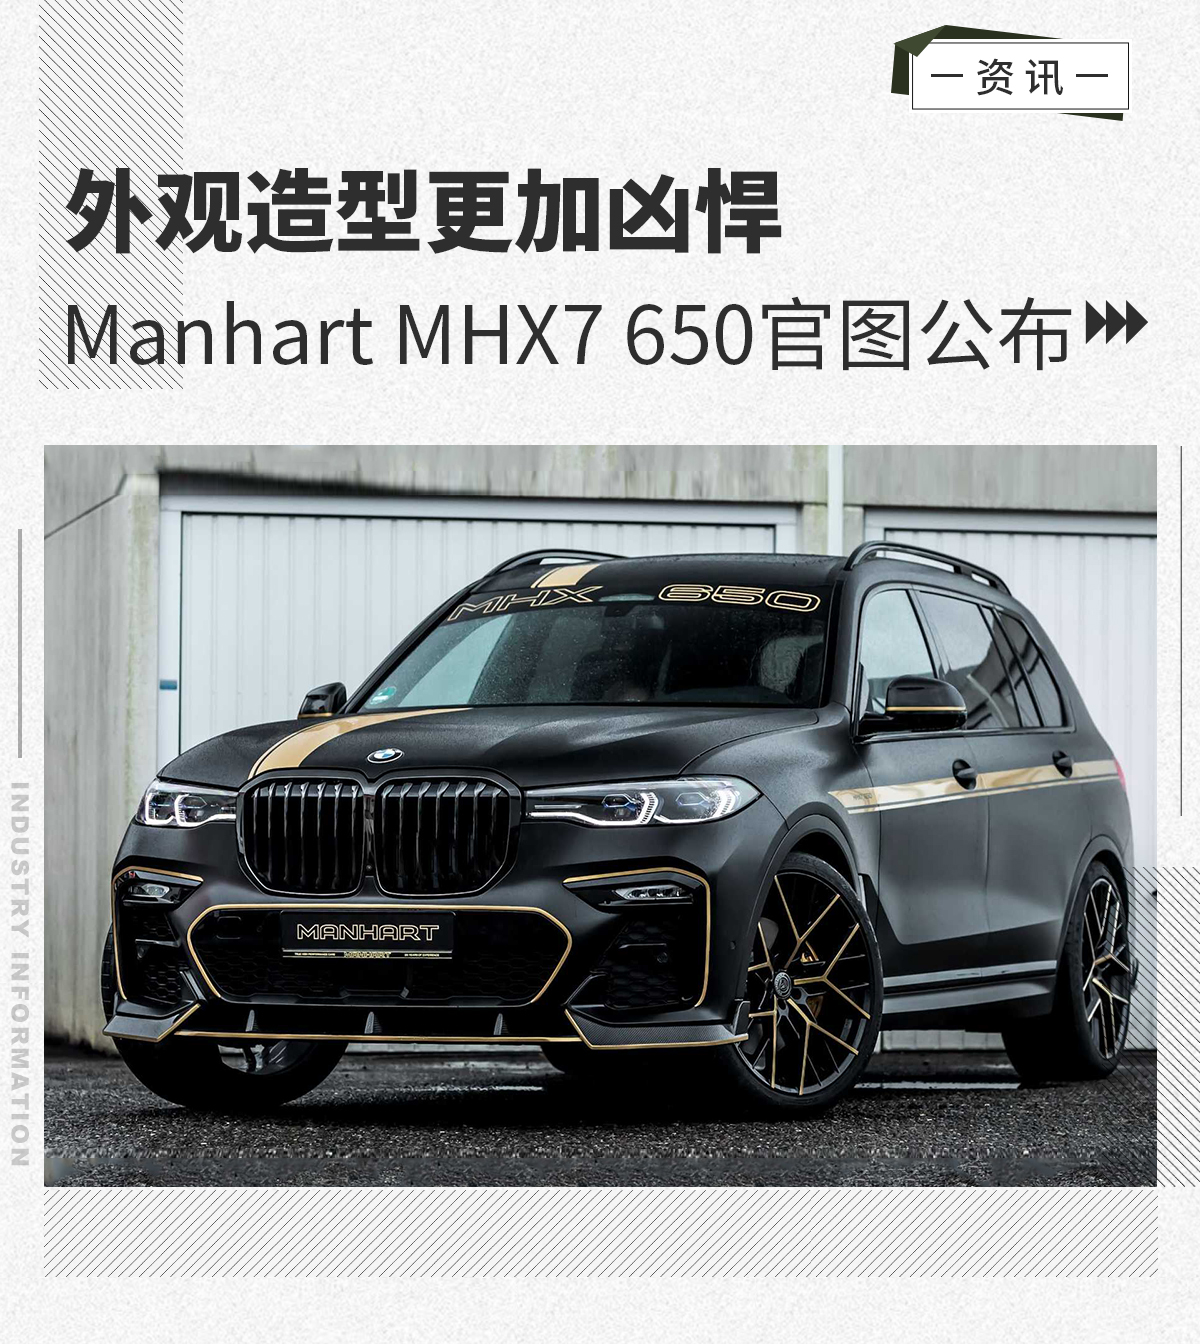 外观造型更加凶悍 Manhart MHX7 650官图公布